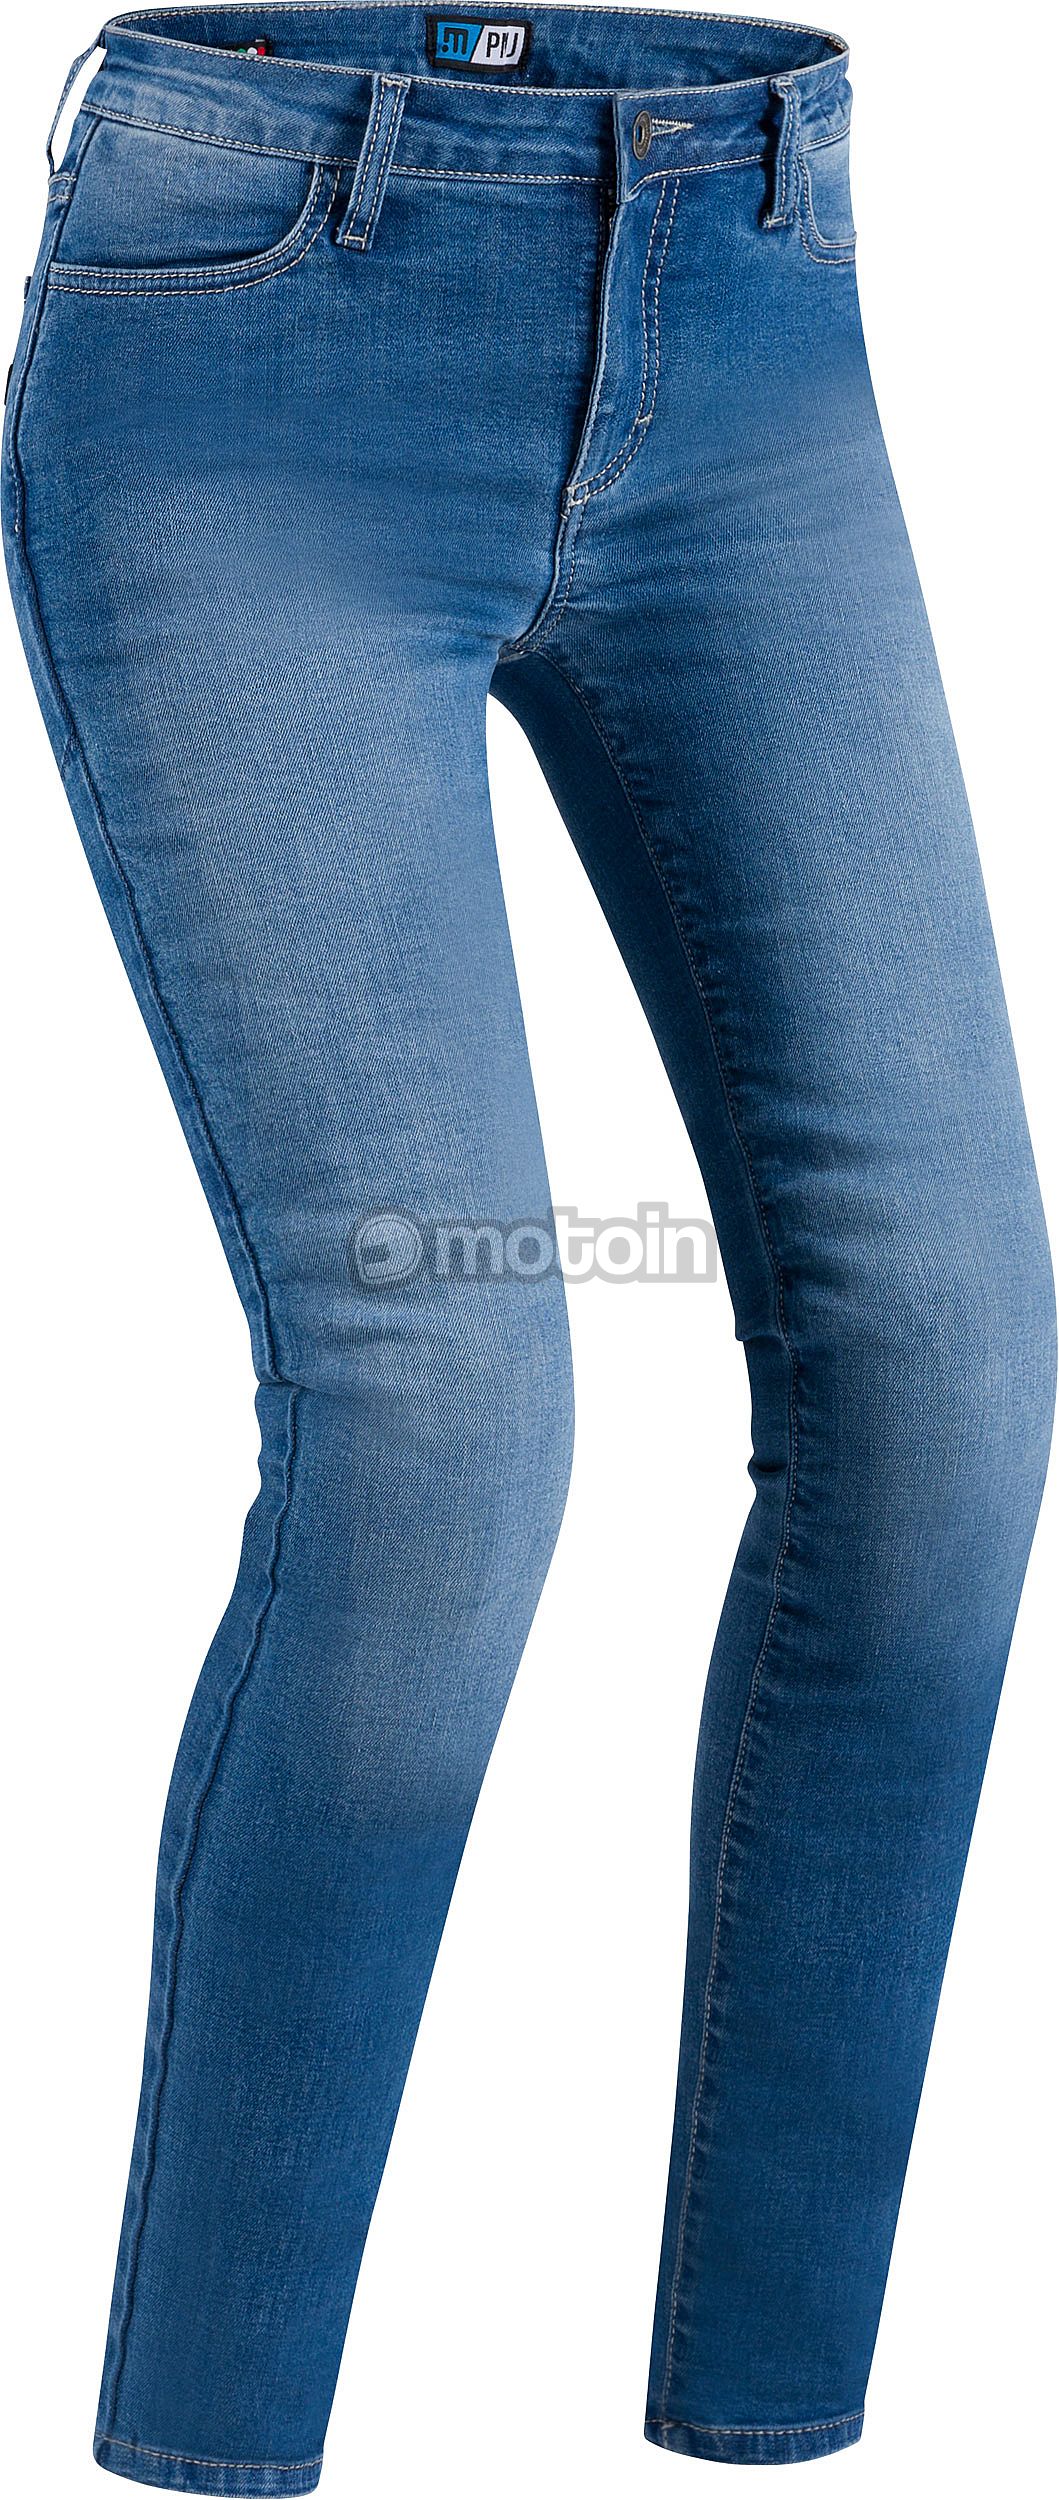 PMJ Skinny, mulheres de calça jeans